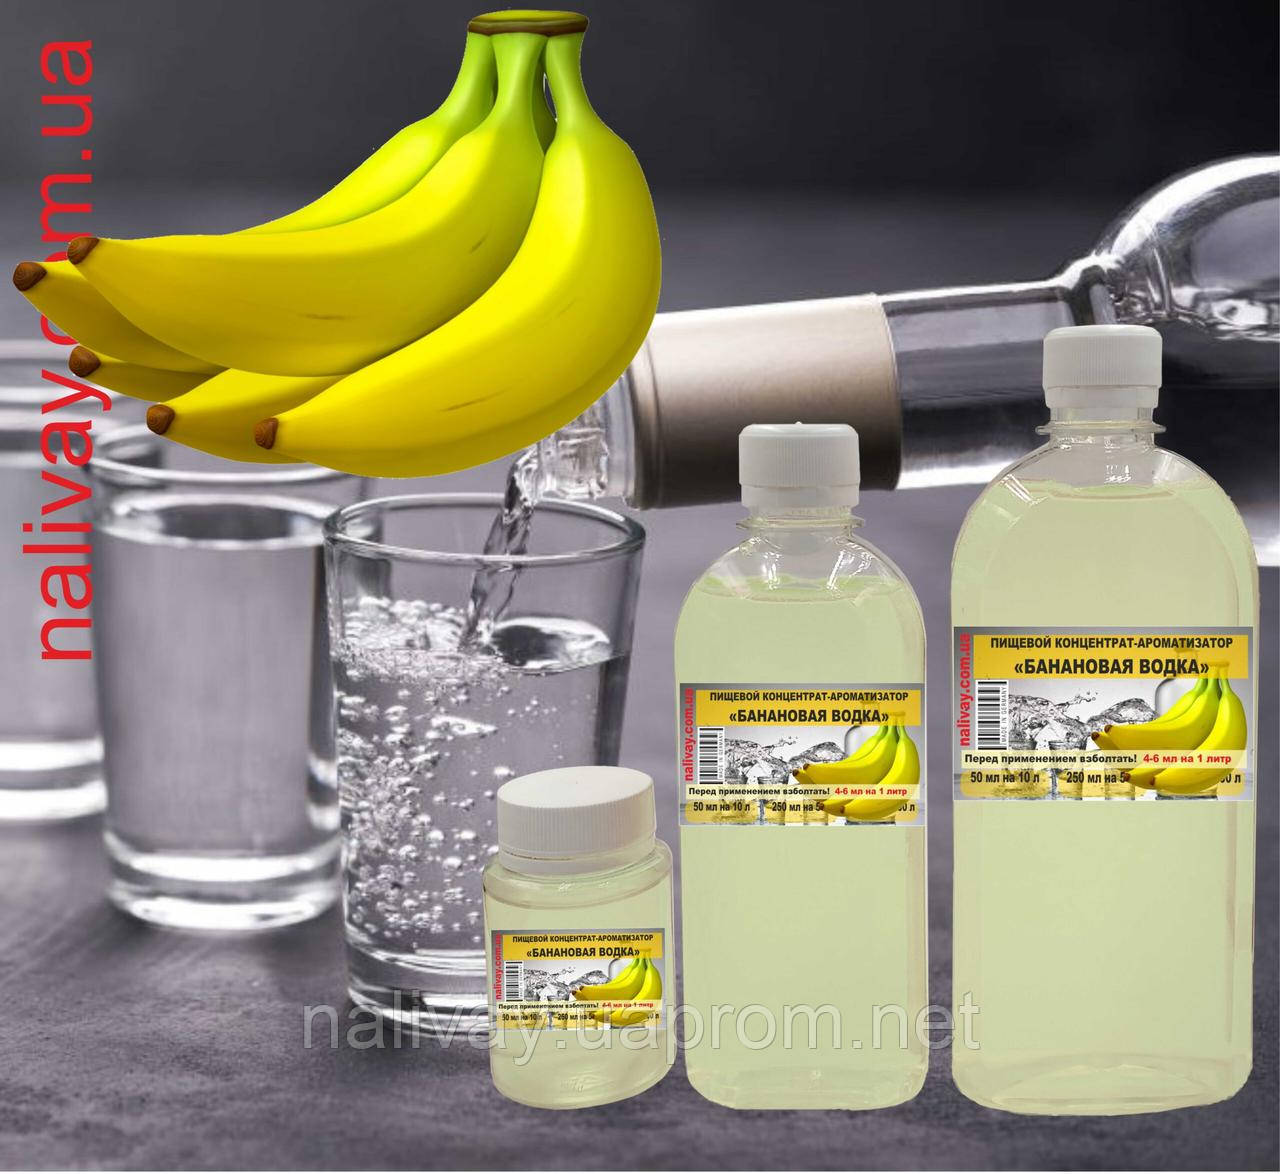 Водка ароматизатор «Банановая водка» эссенция на 10 литров